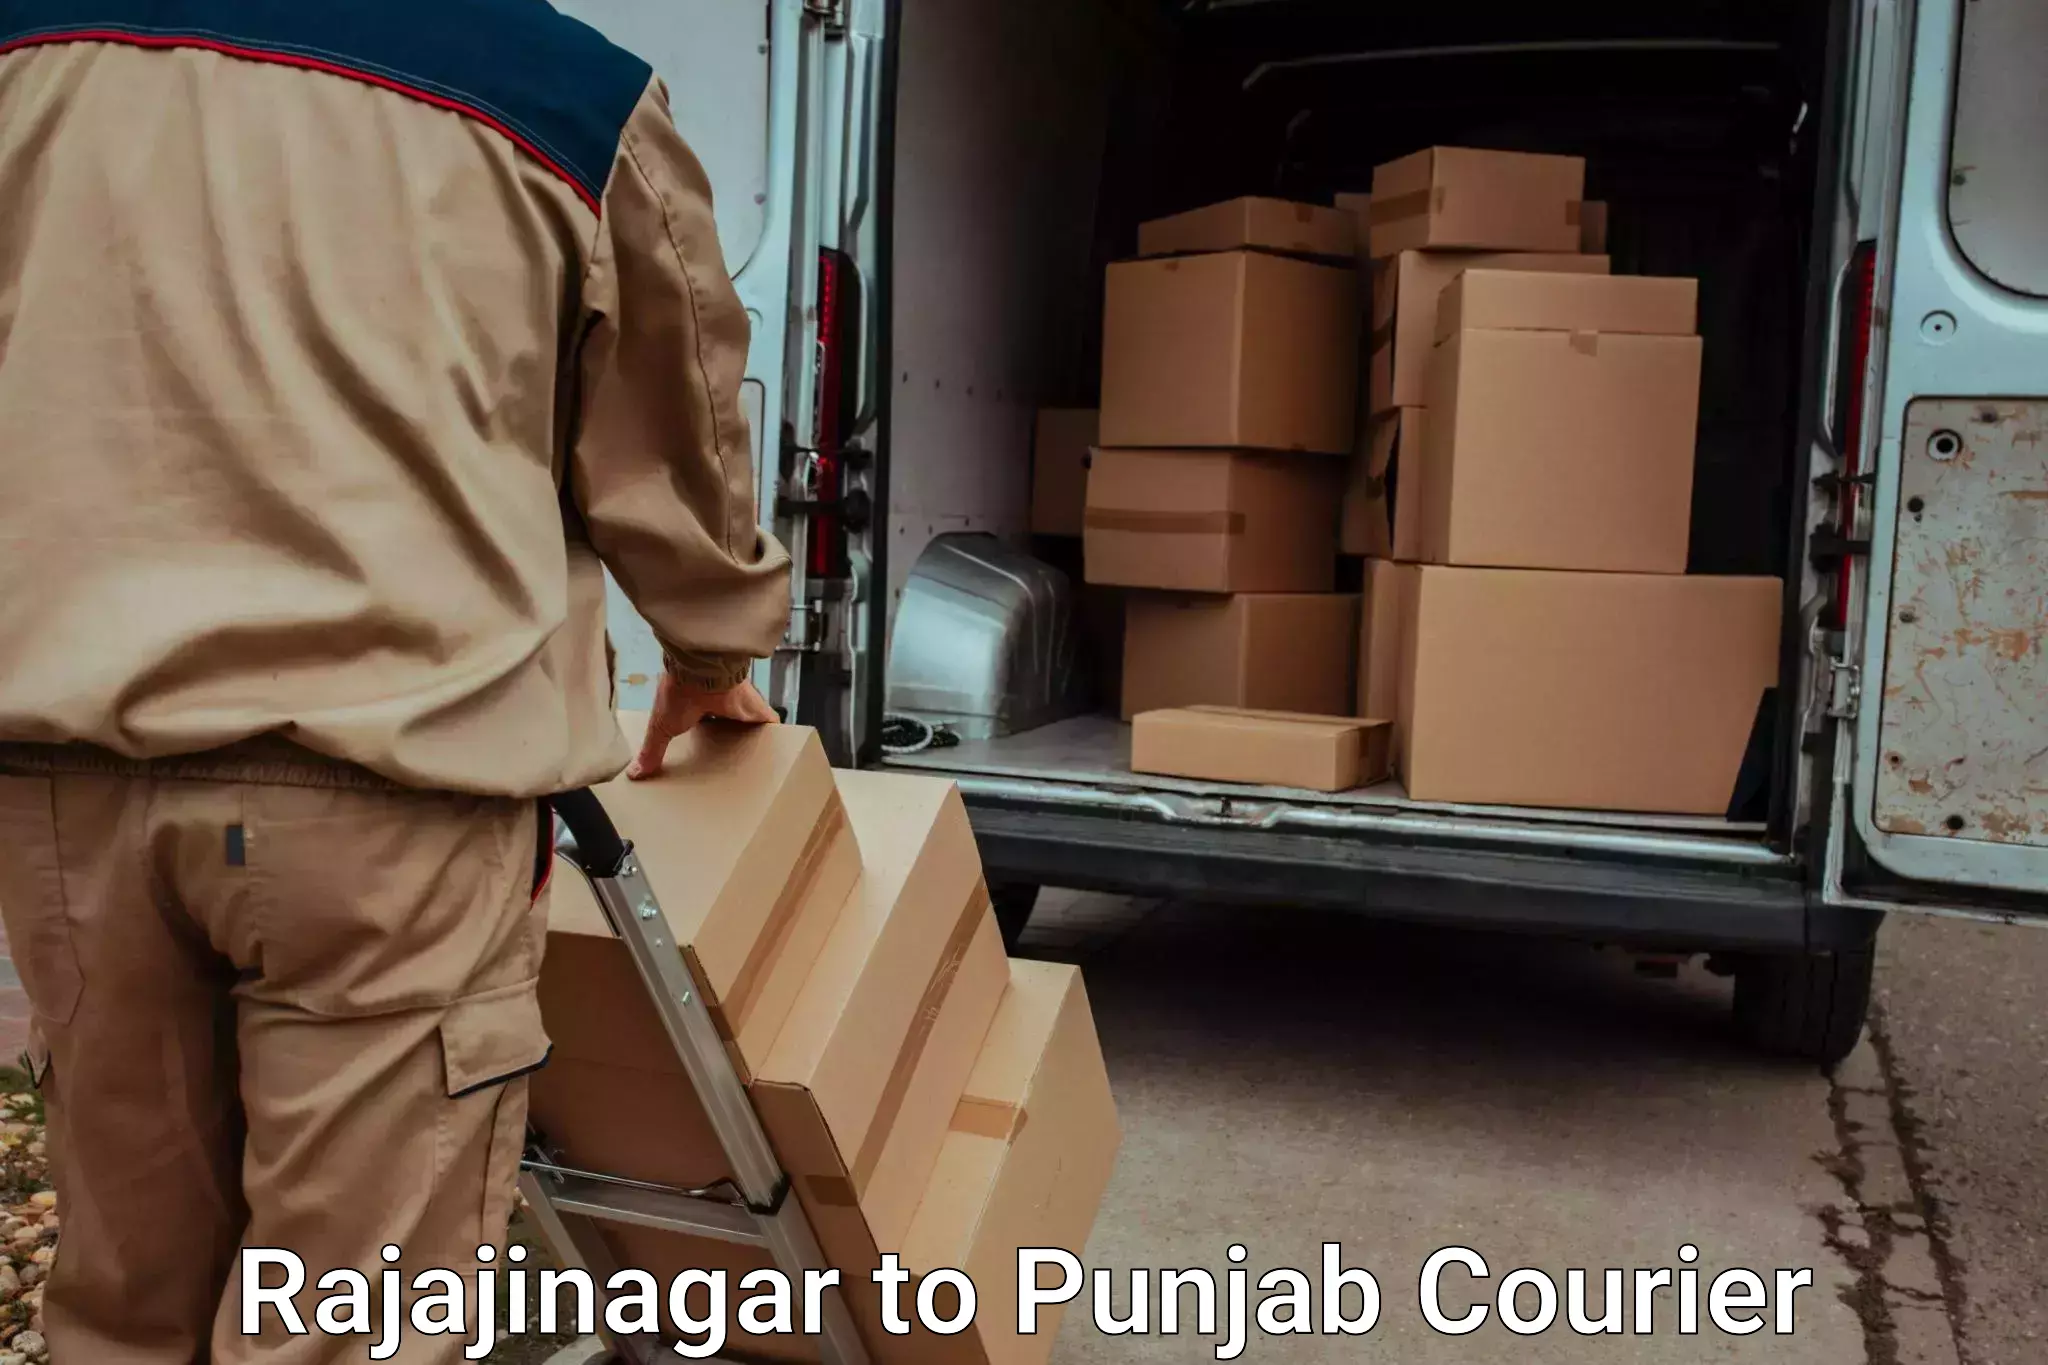 Stress-free moving Rajajinagar to Punjab